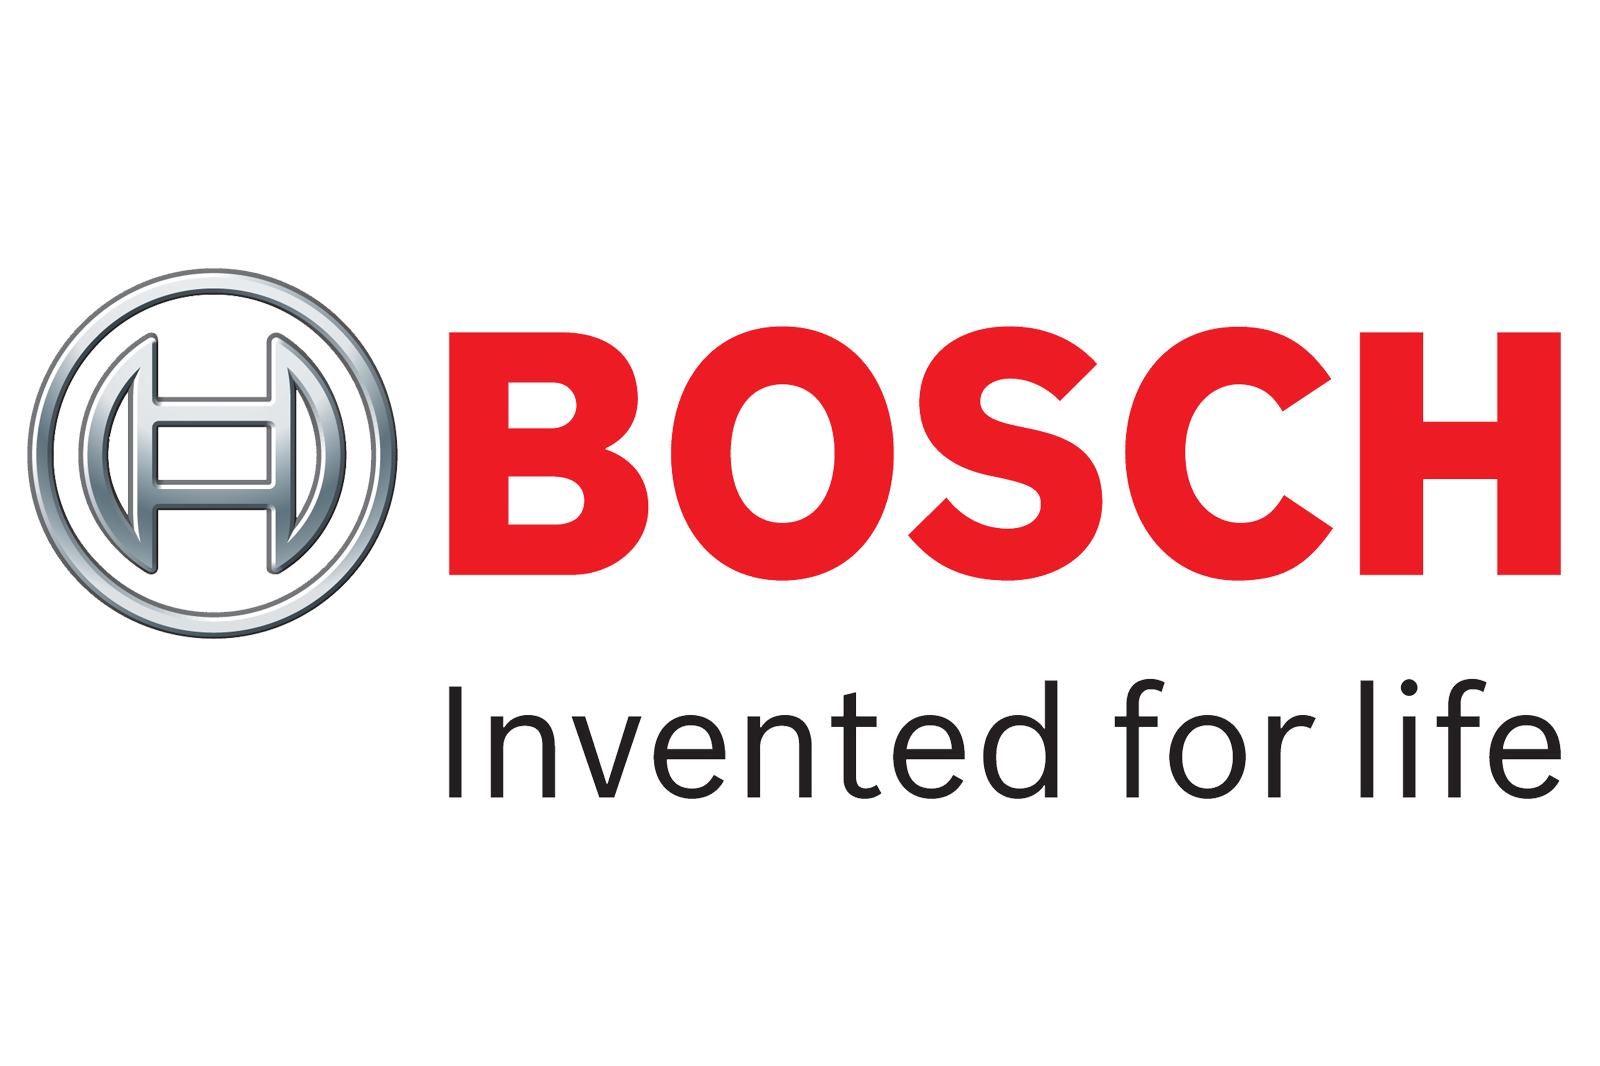 Bosch đã phát triển phần mềm gian lận VW Dieselgate, nghiên cứu phát hiện...